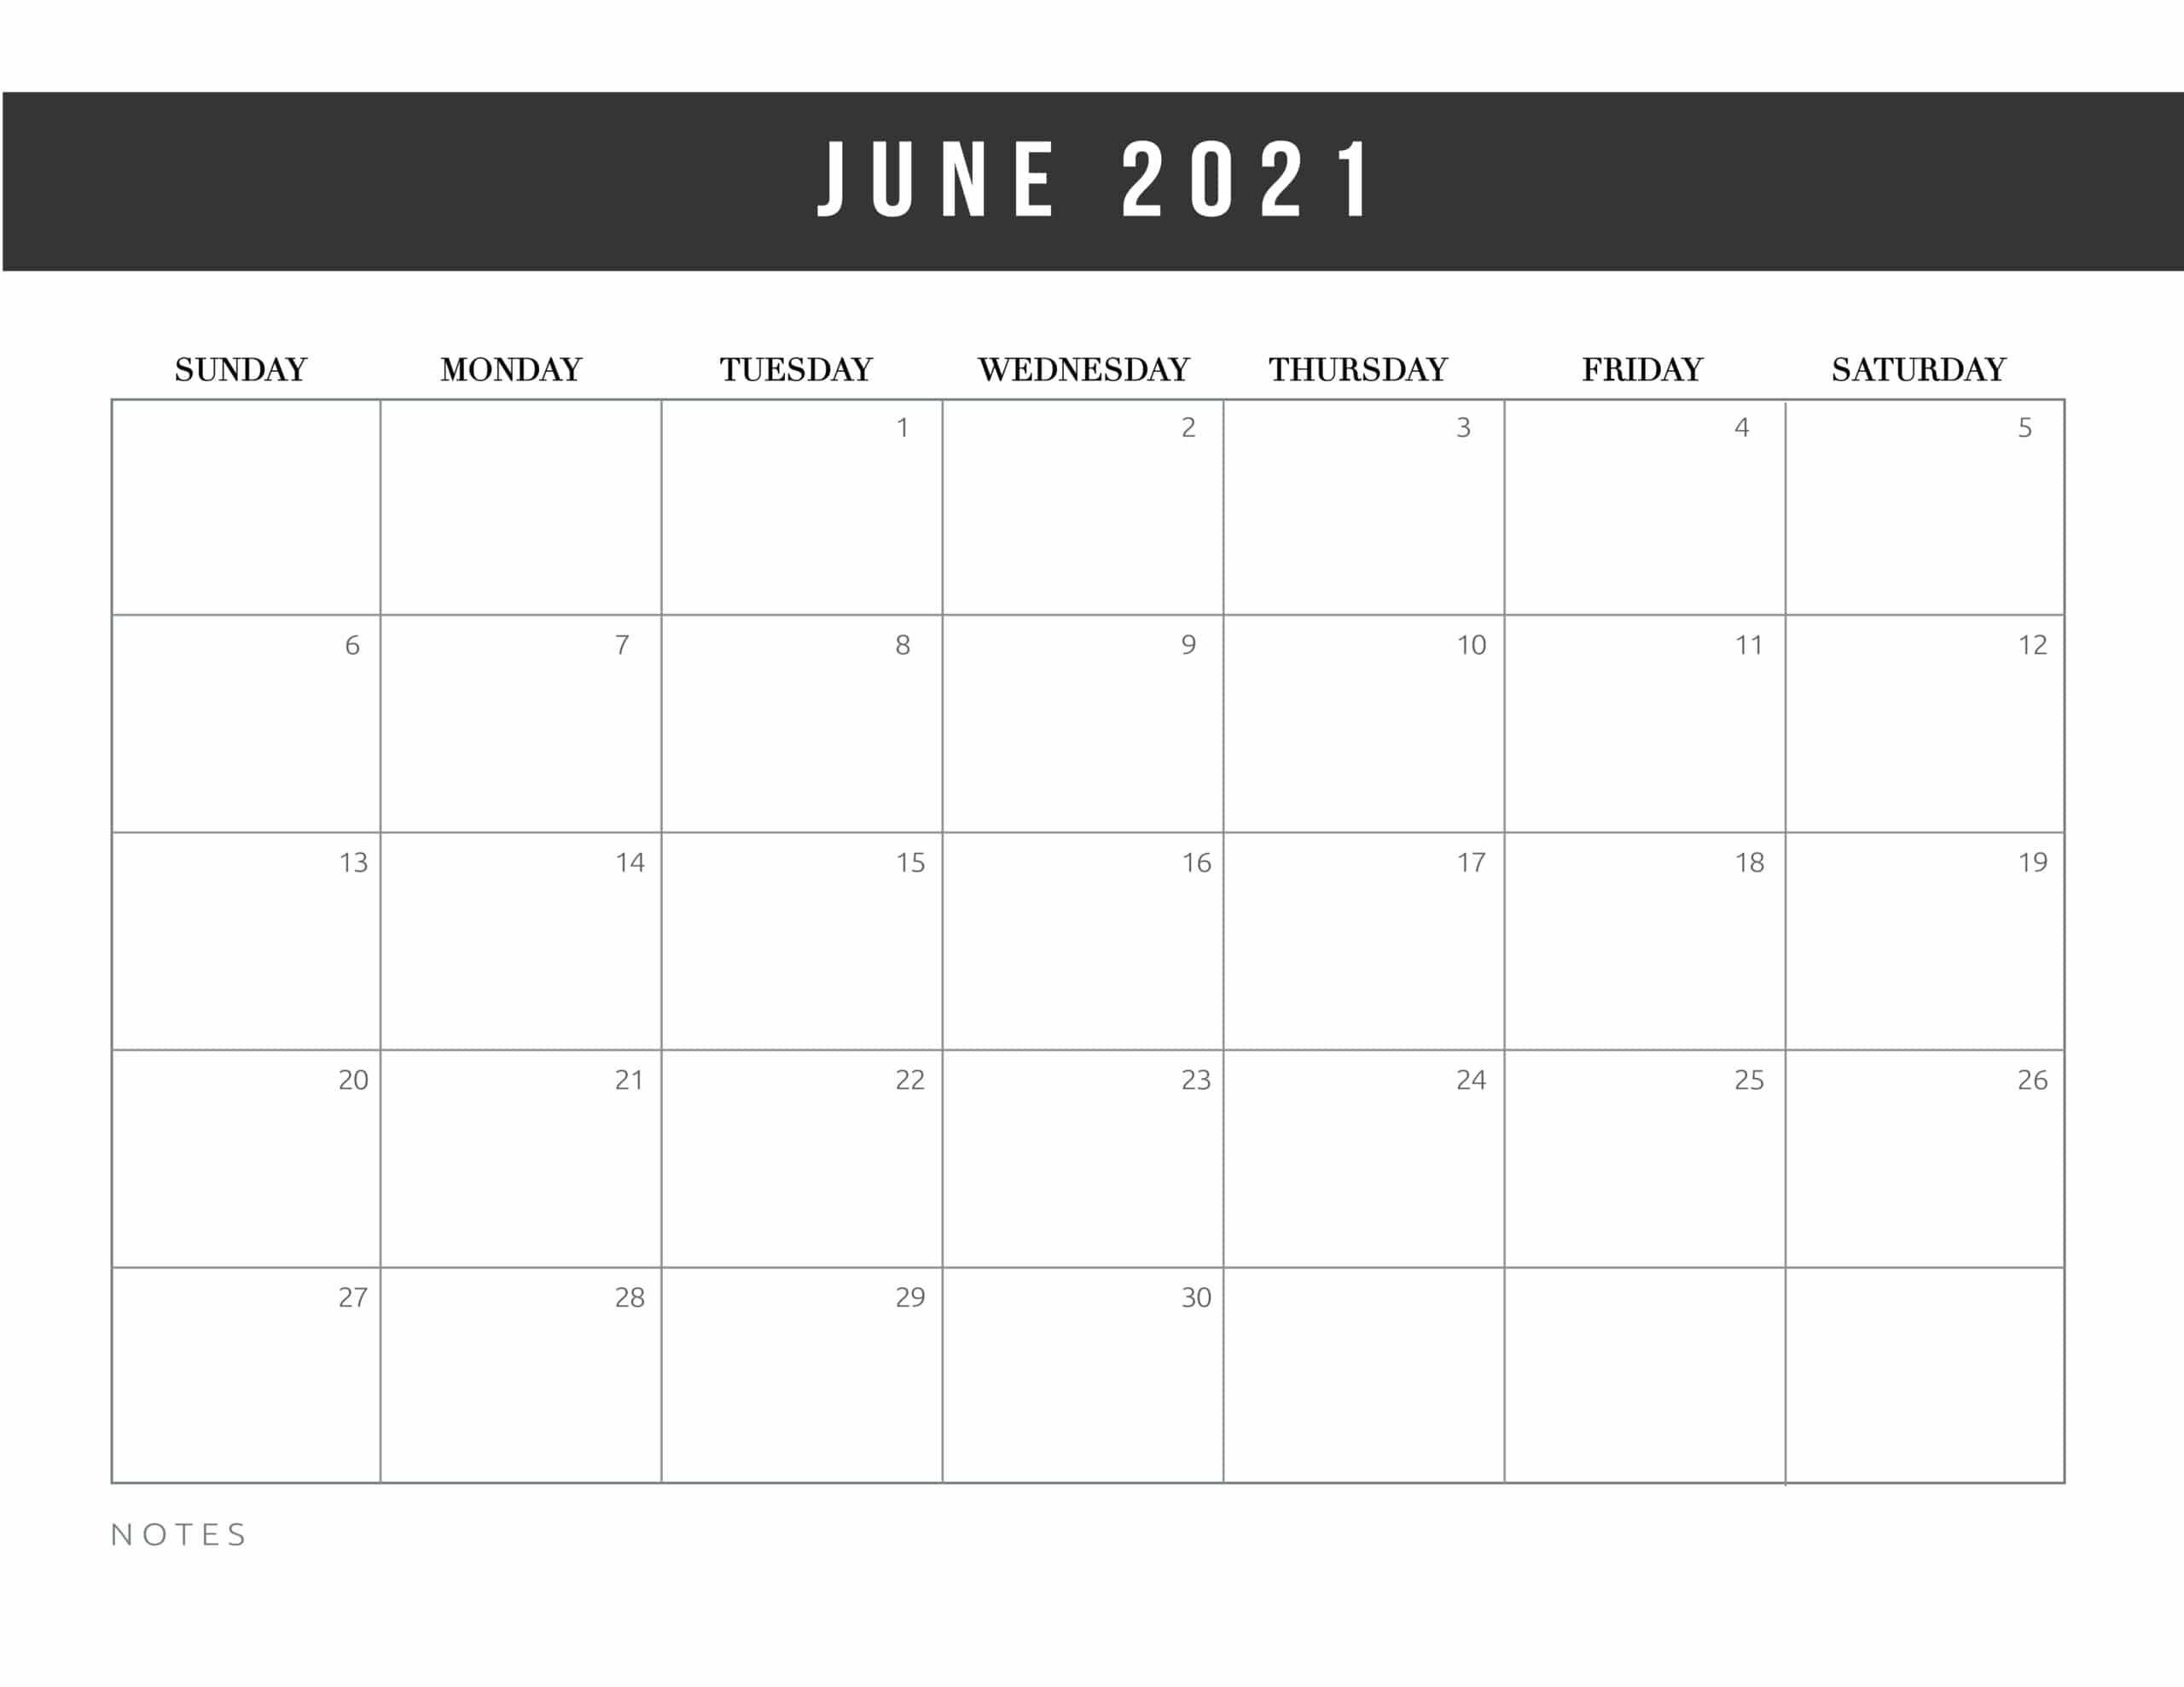 June 2021 Calendar Printable